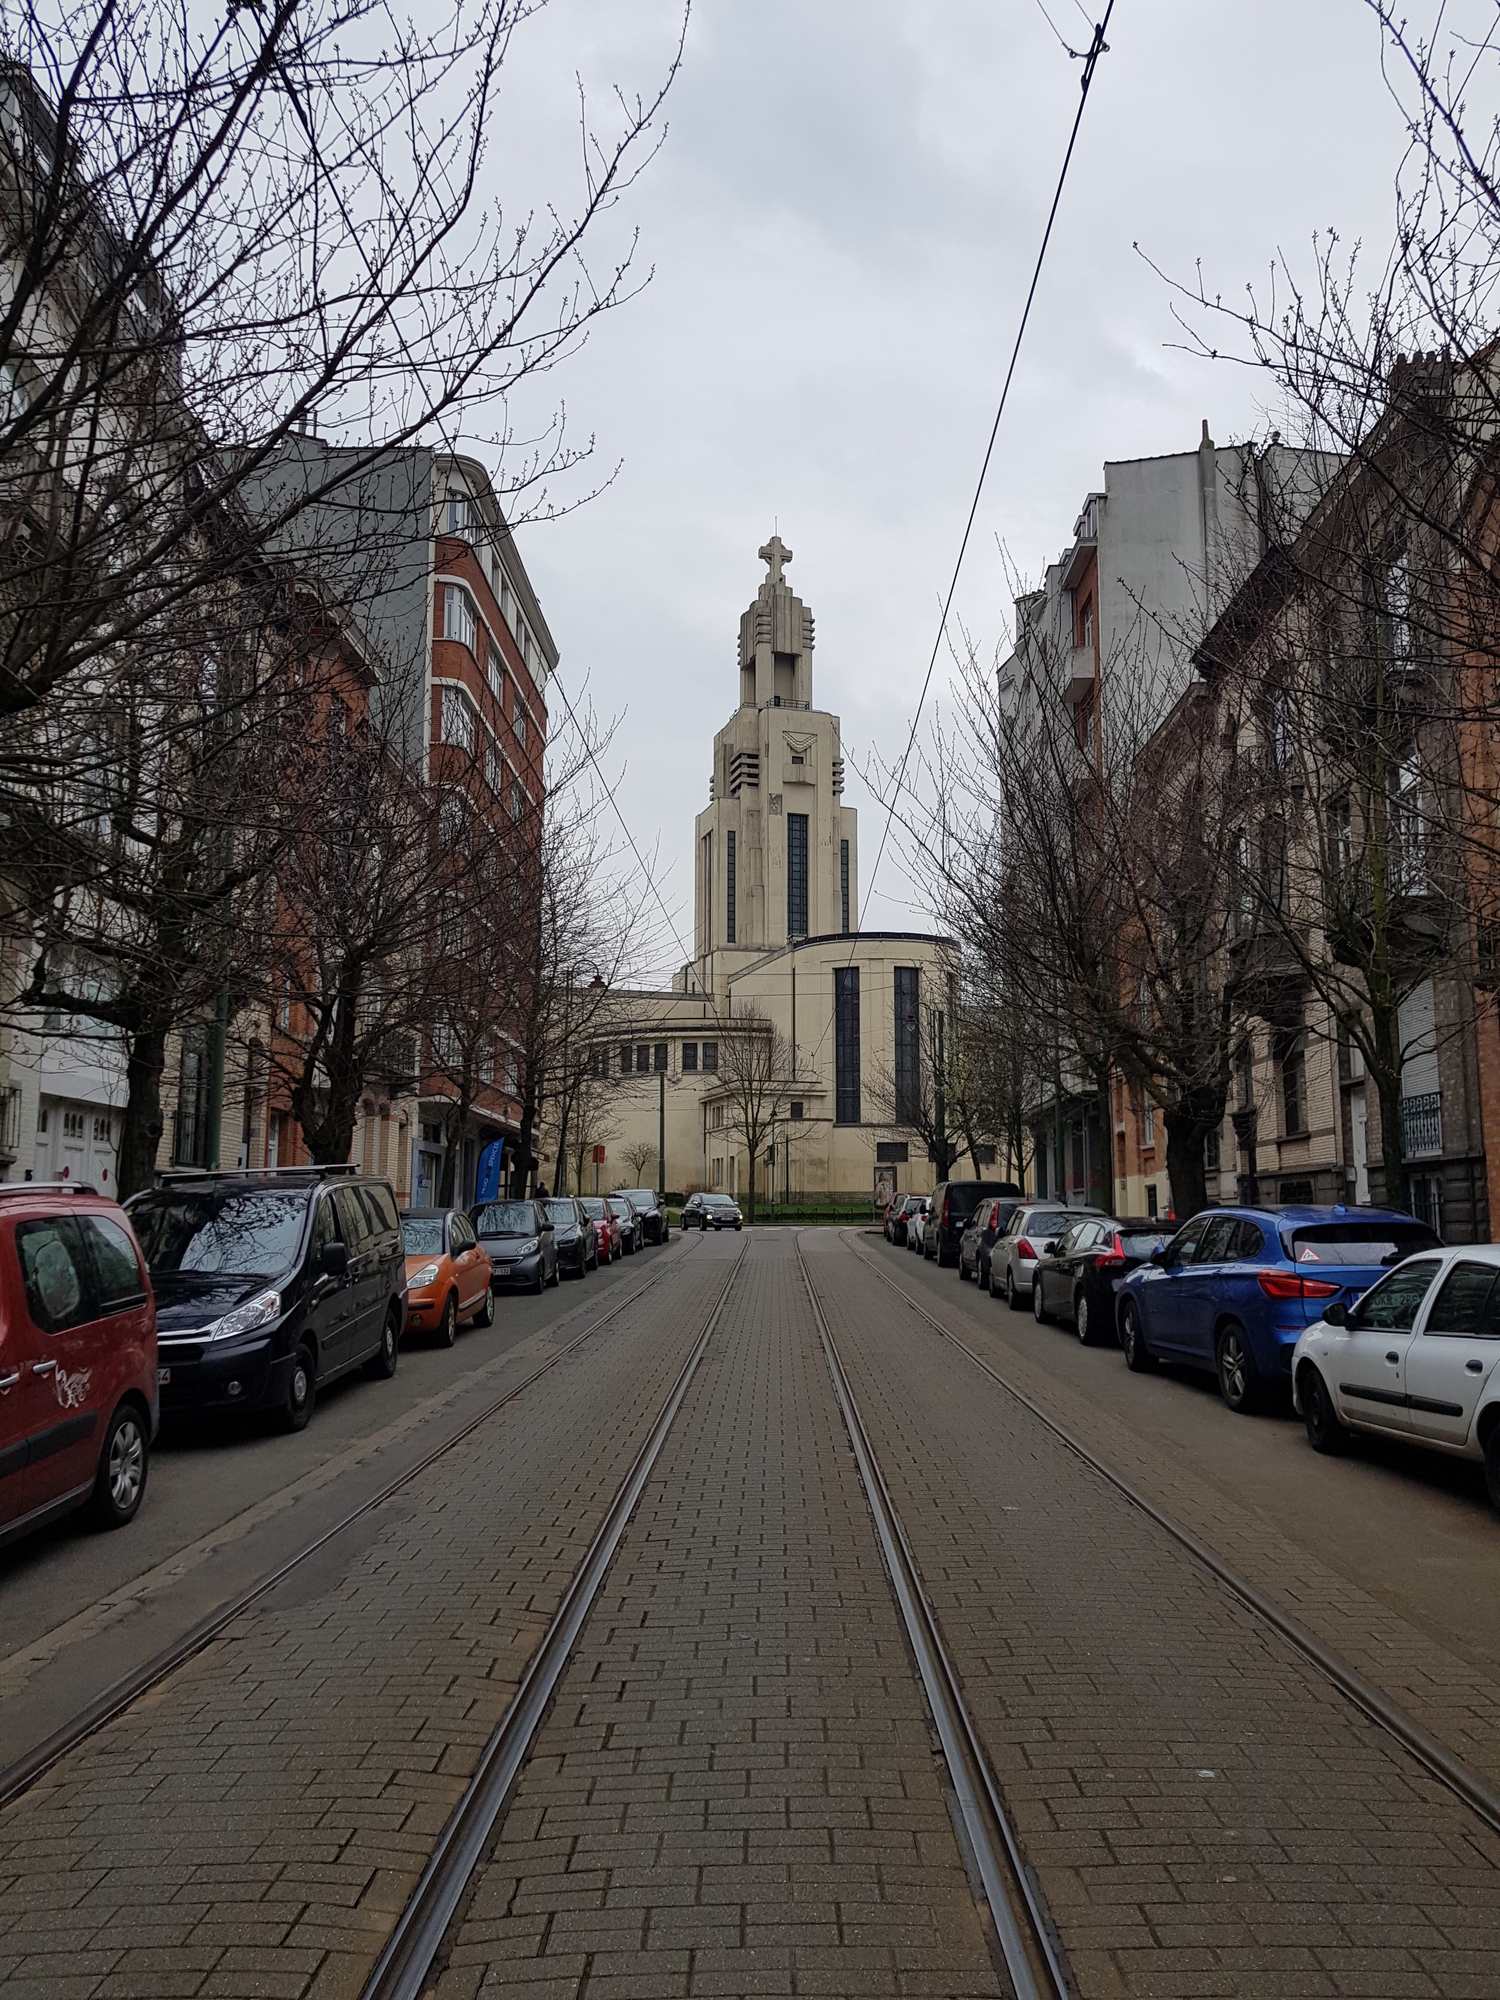 La place de l’Altitude cent, le point culminant de Bruxelles, dans le quartier de Forest où je loge. Au sol, on aperçoit les rails du tramway de la ligne 51.